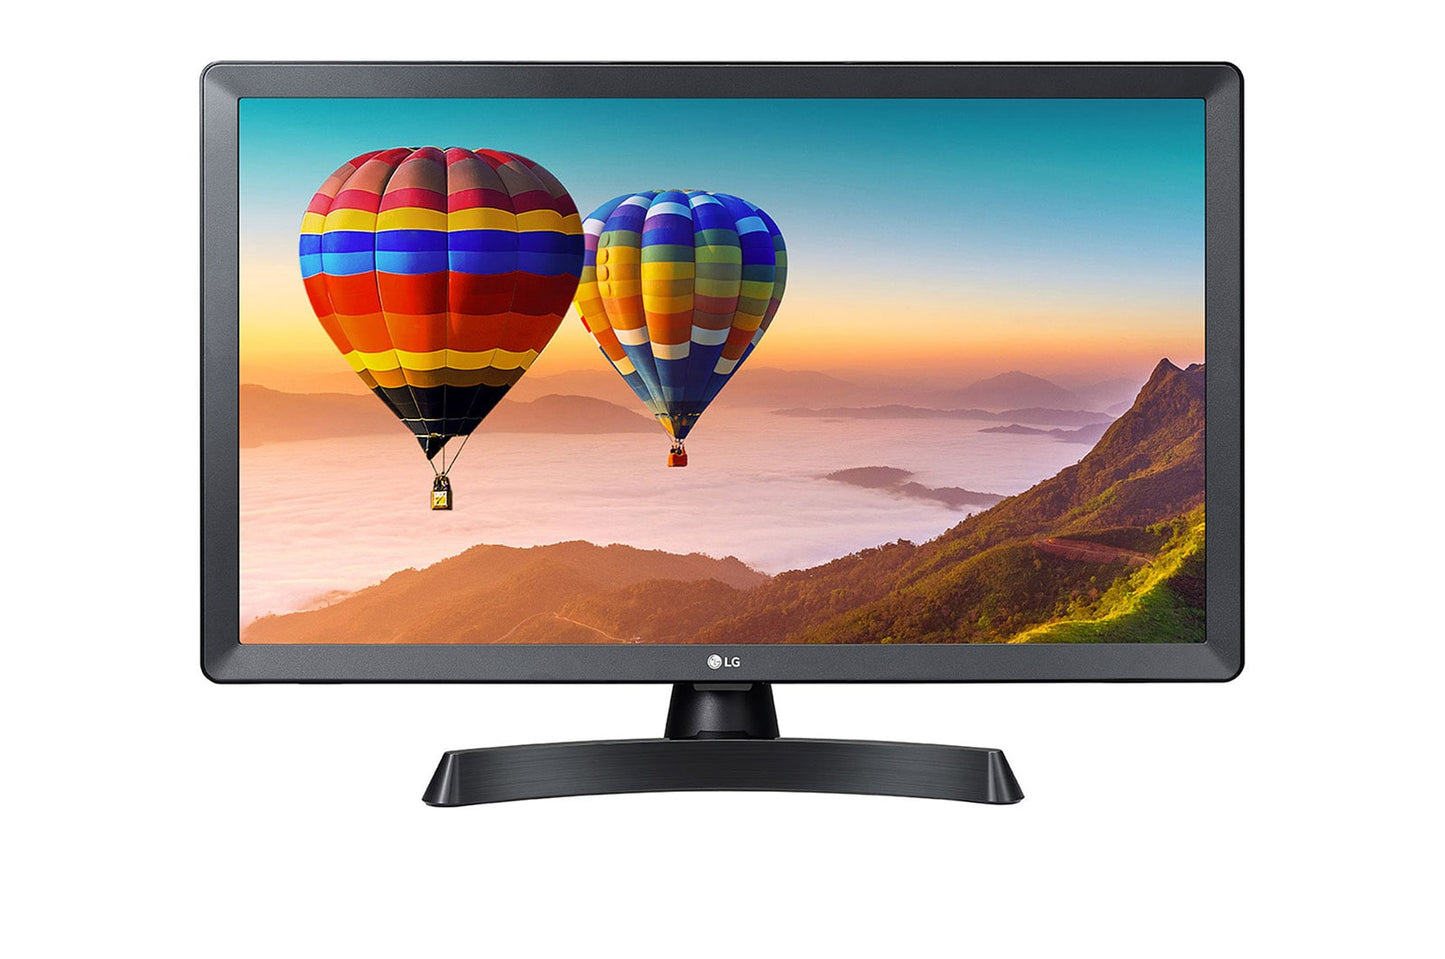 LG 24TN510S-PZ Smart Monitor 23.6" 1366x768